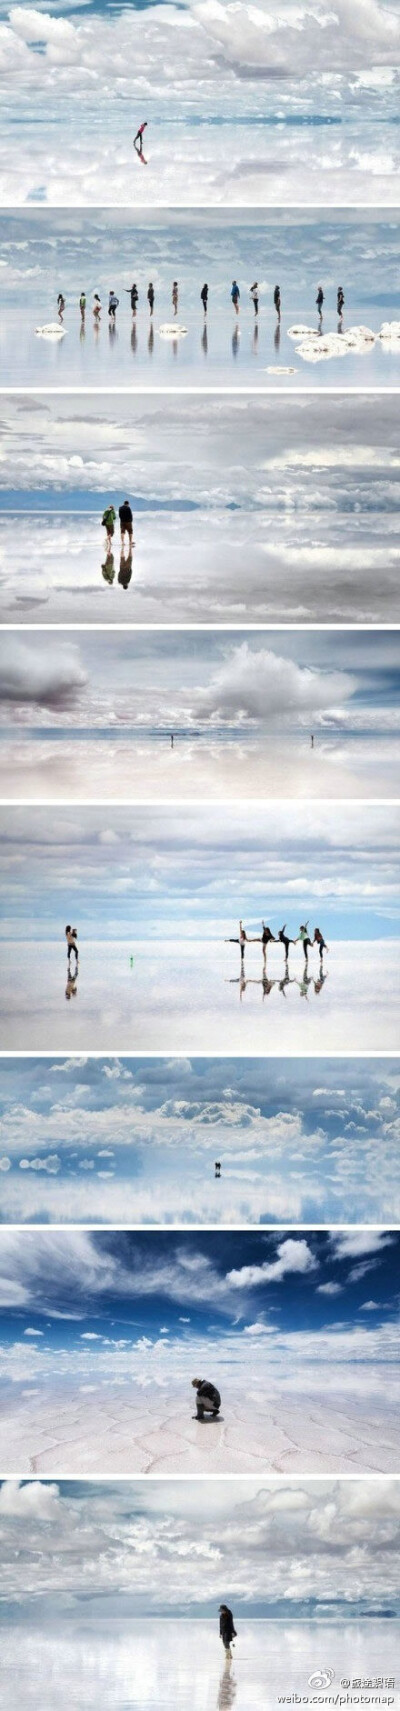 乌尤尼盐沼，世上最大的镜子，水天一色的美景。